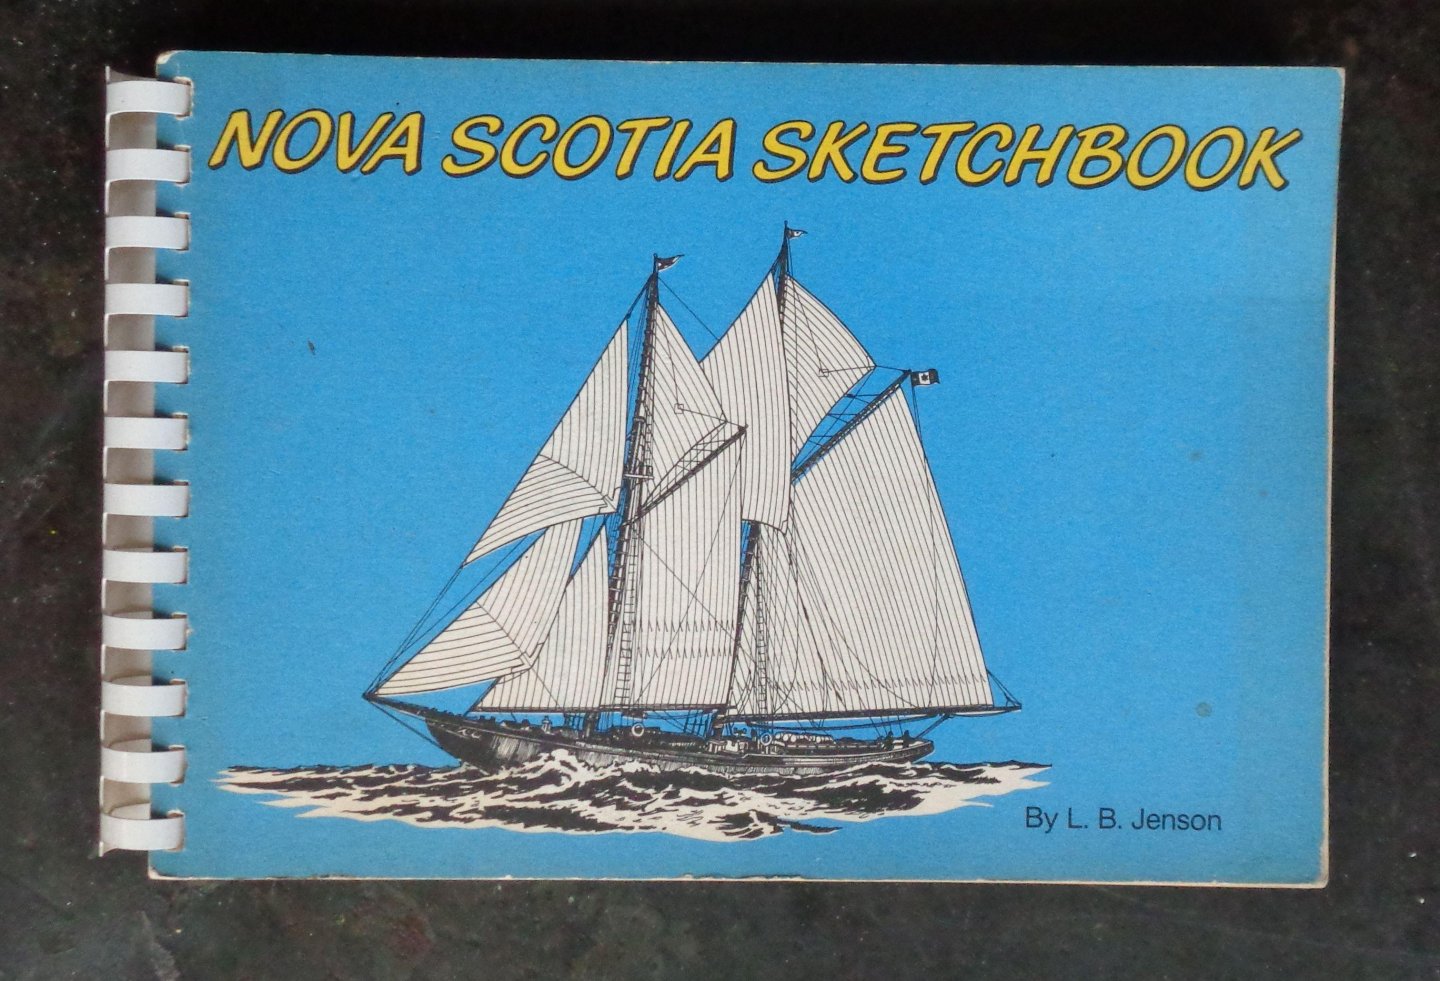 Jenson, l.b. - Nova Scotia Sketchbook